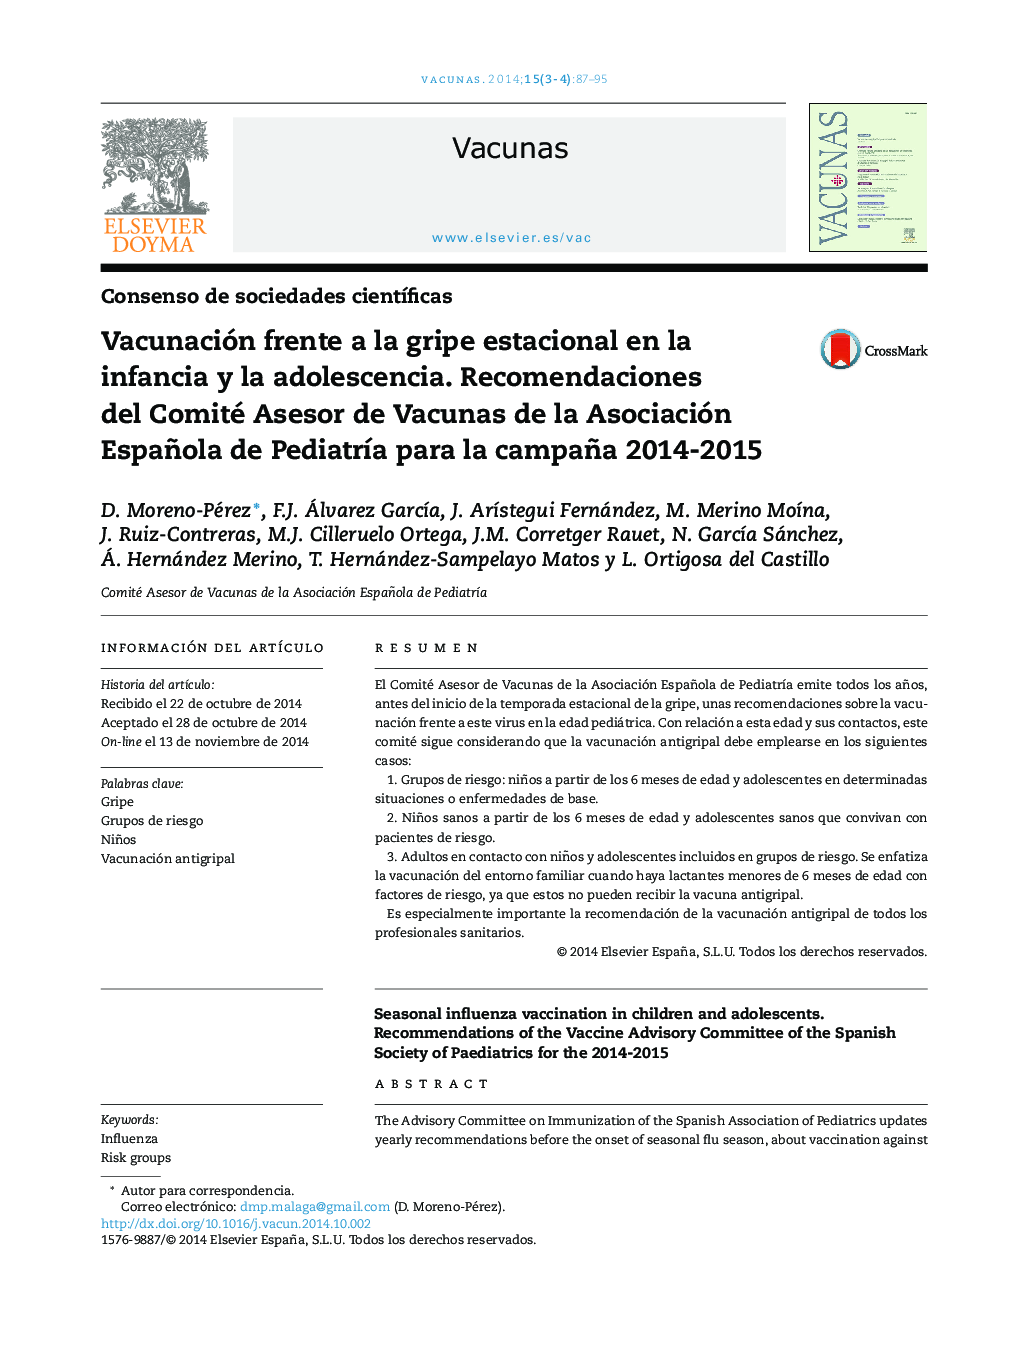 Vacunación frente a la gripe estacional en la infancia y la adolescencia. Recomendaciones del Comité Asesor de Vacunas de la Asociación Española de PediatrÃ­a para la campaña 2014-2015